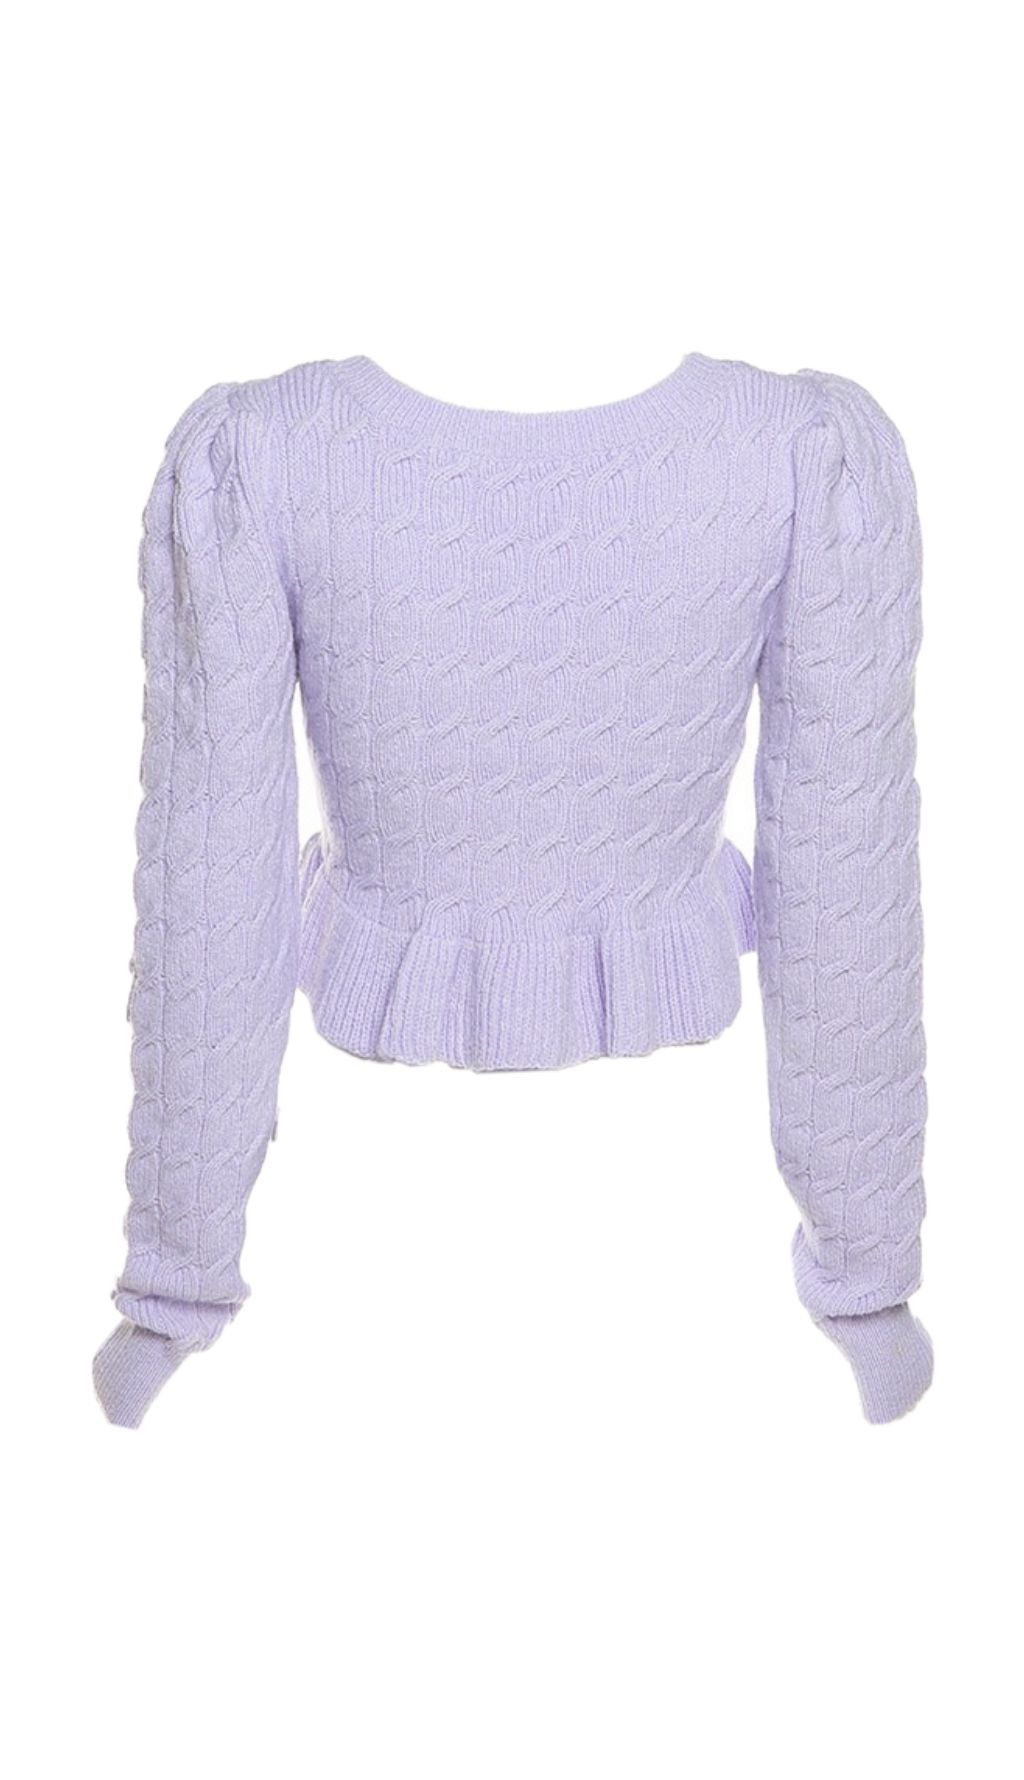 Low-cut knit short sweater